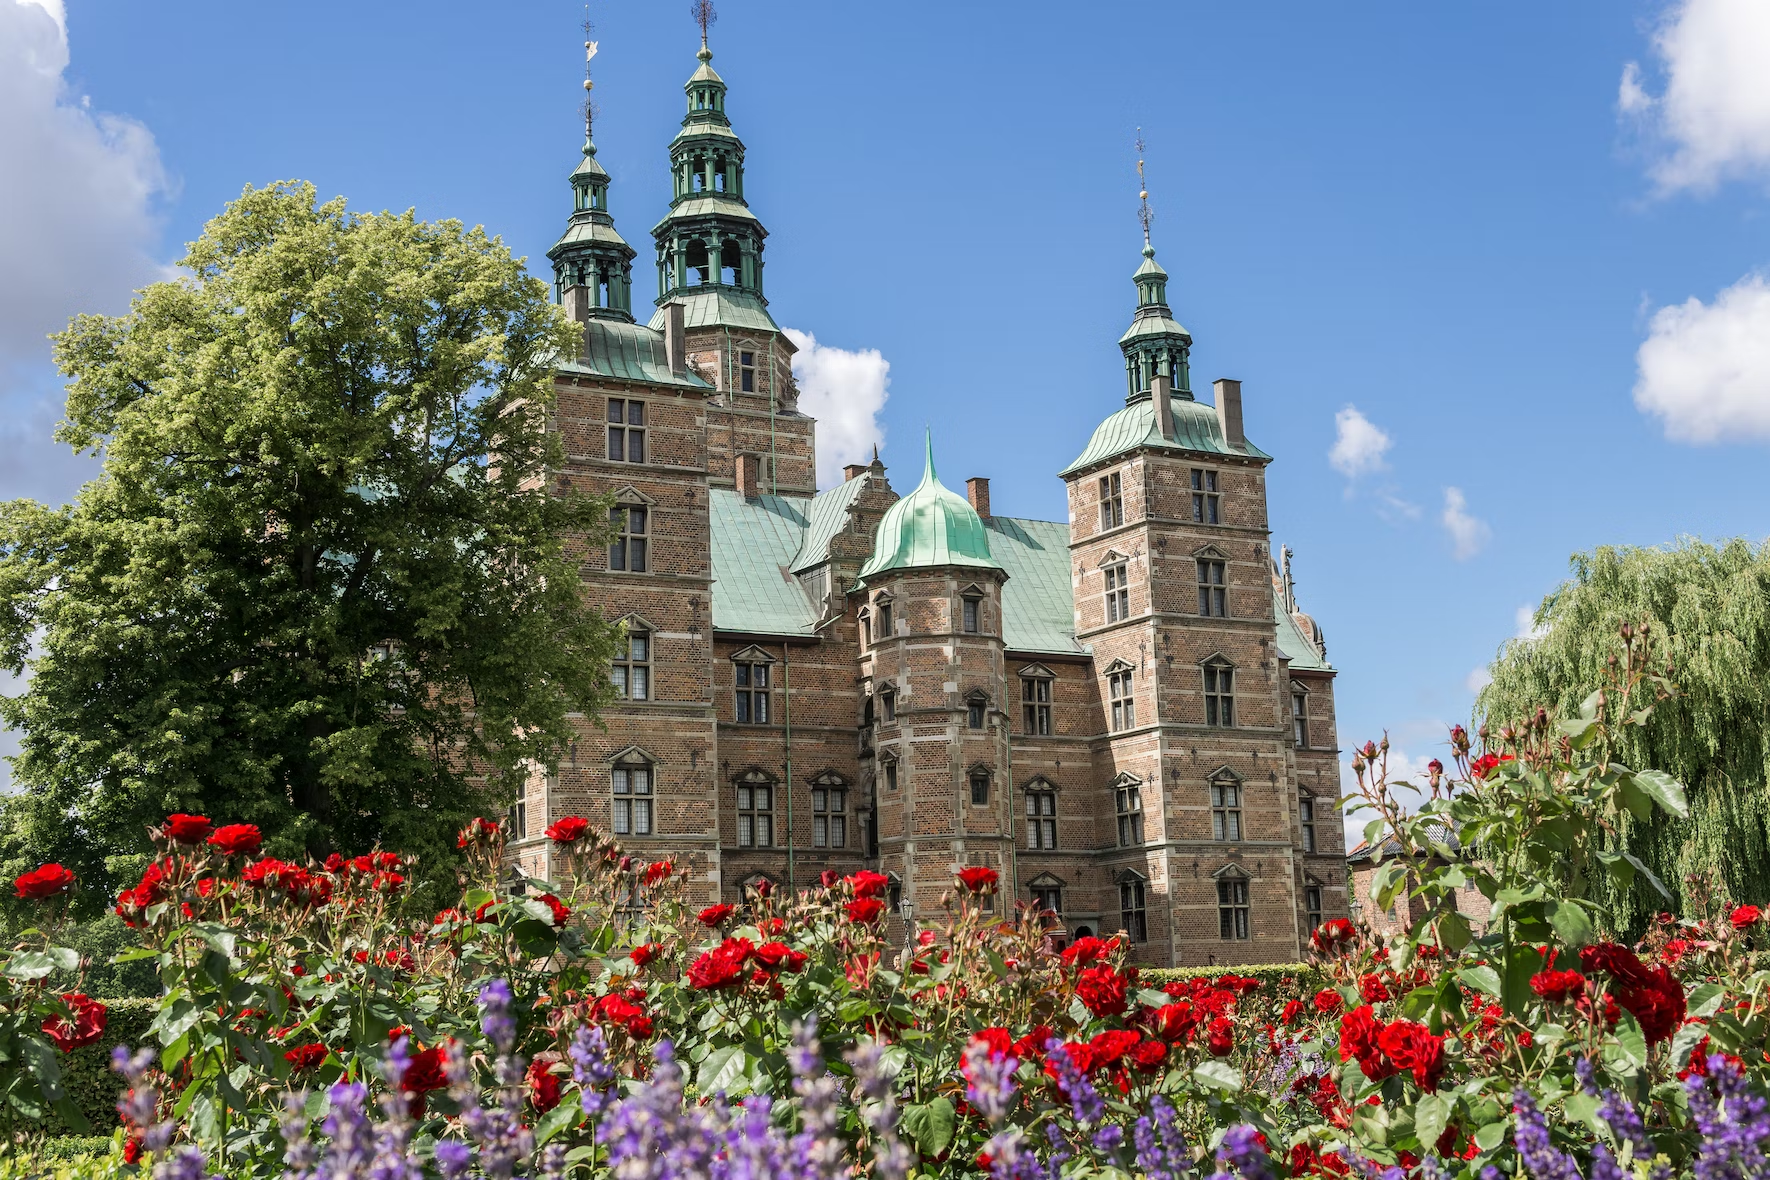 Rosenborg castle things to do in copenhagen